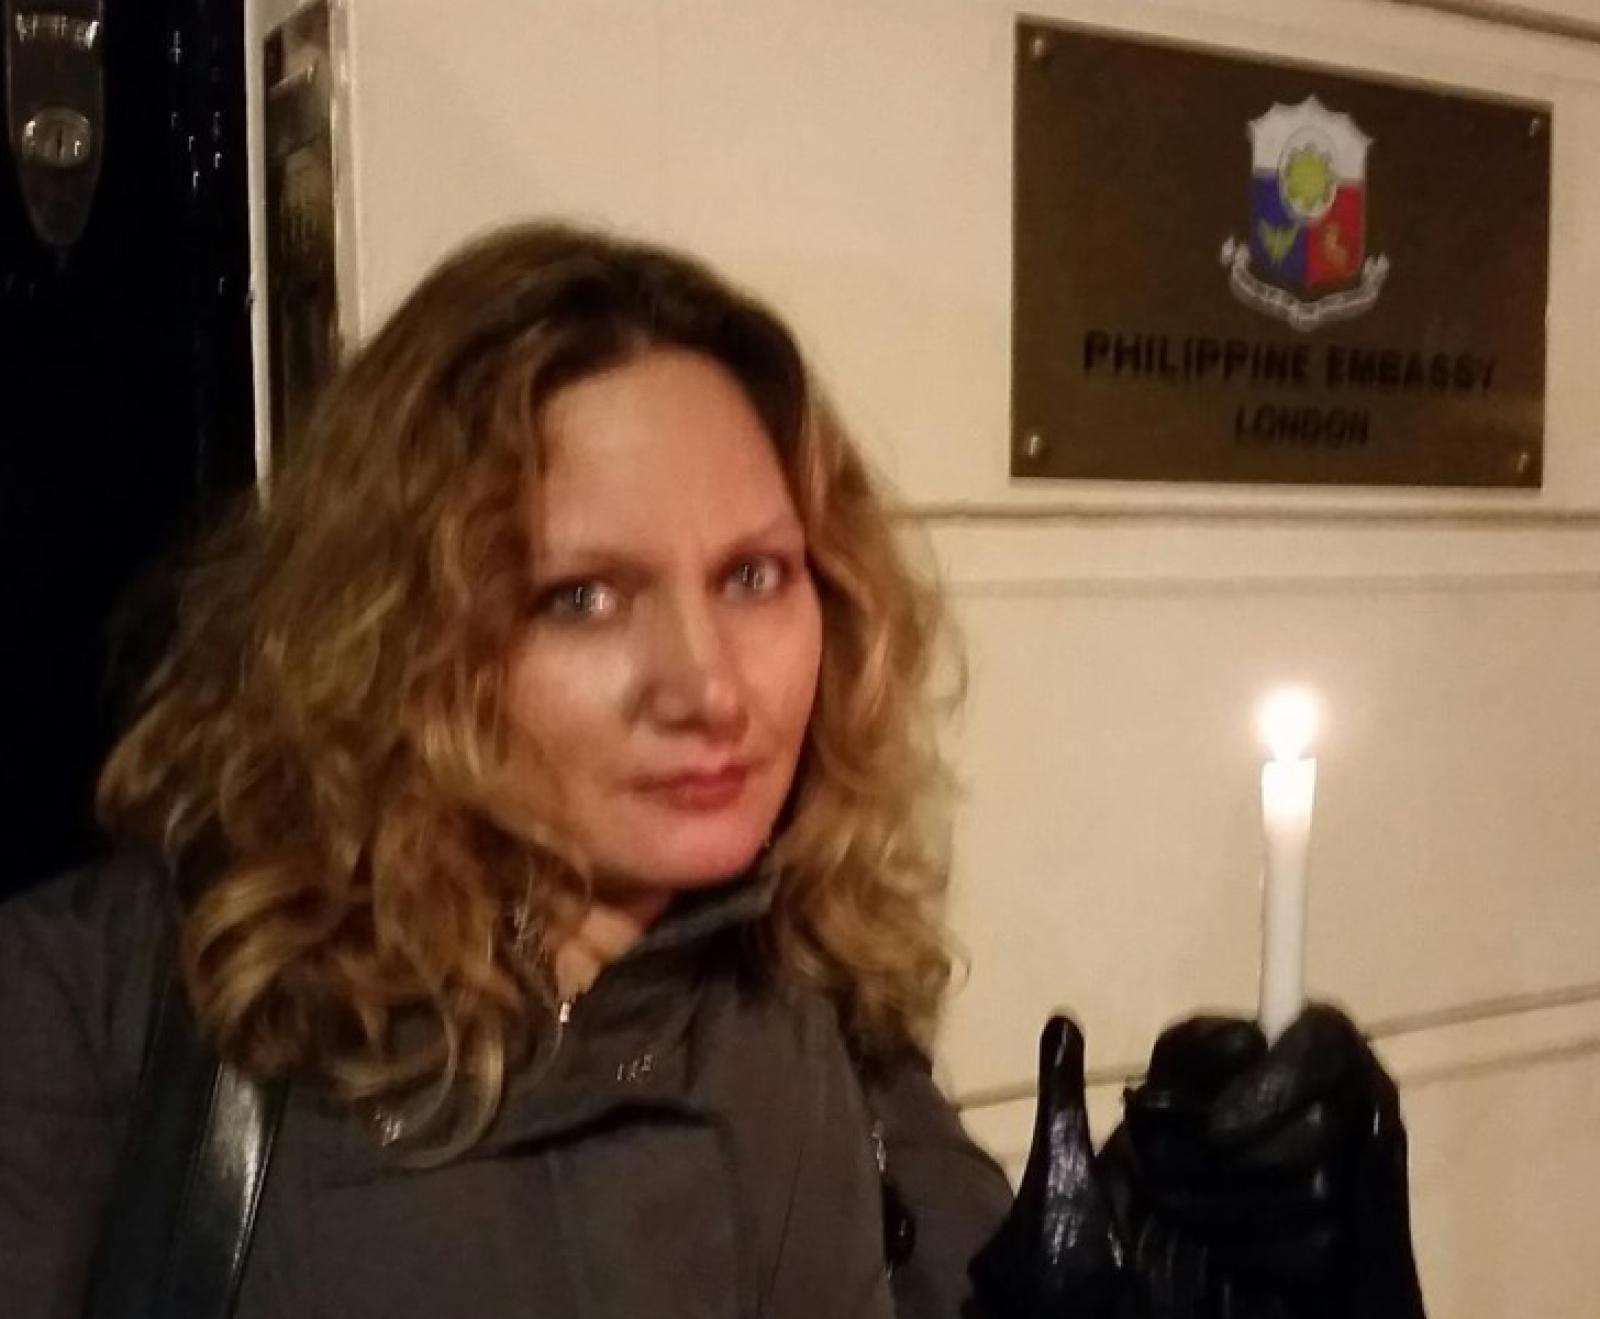 Muchas personas mostraron su apoyo a la Campaña un millón de velas fuera de las reuniones organizadas. Elisabeth Witchel del CPJ hizo brillar una luz de solidaridad en la Embajada de Filipinas en Londres, Reino Unido el 23 de noviembre 2014